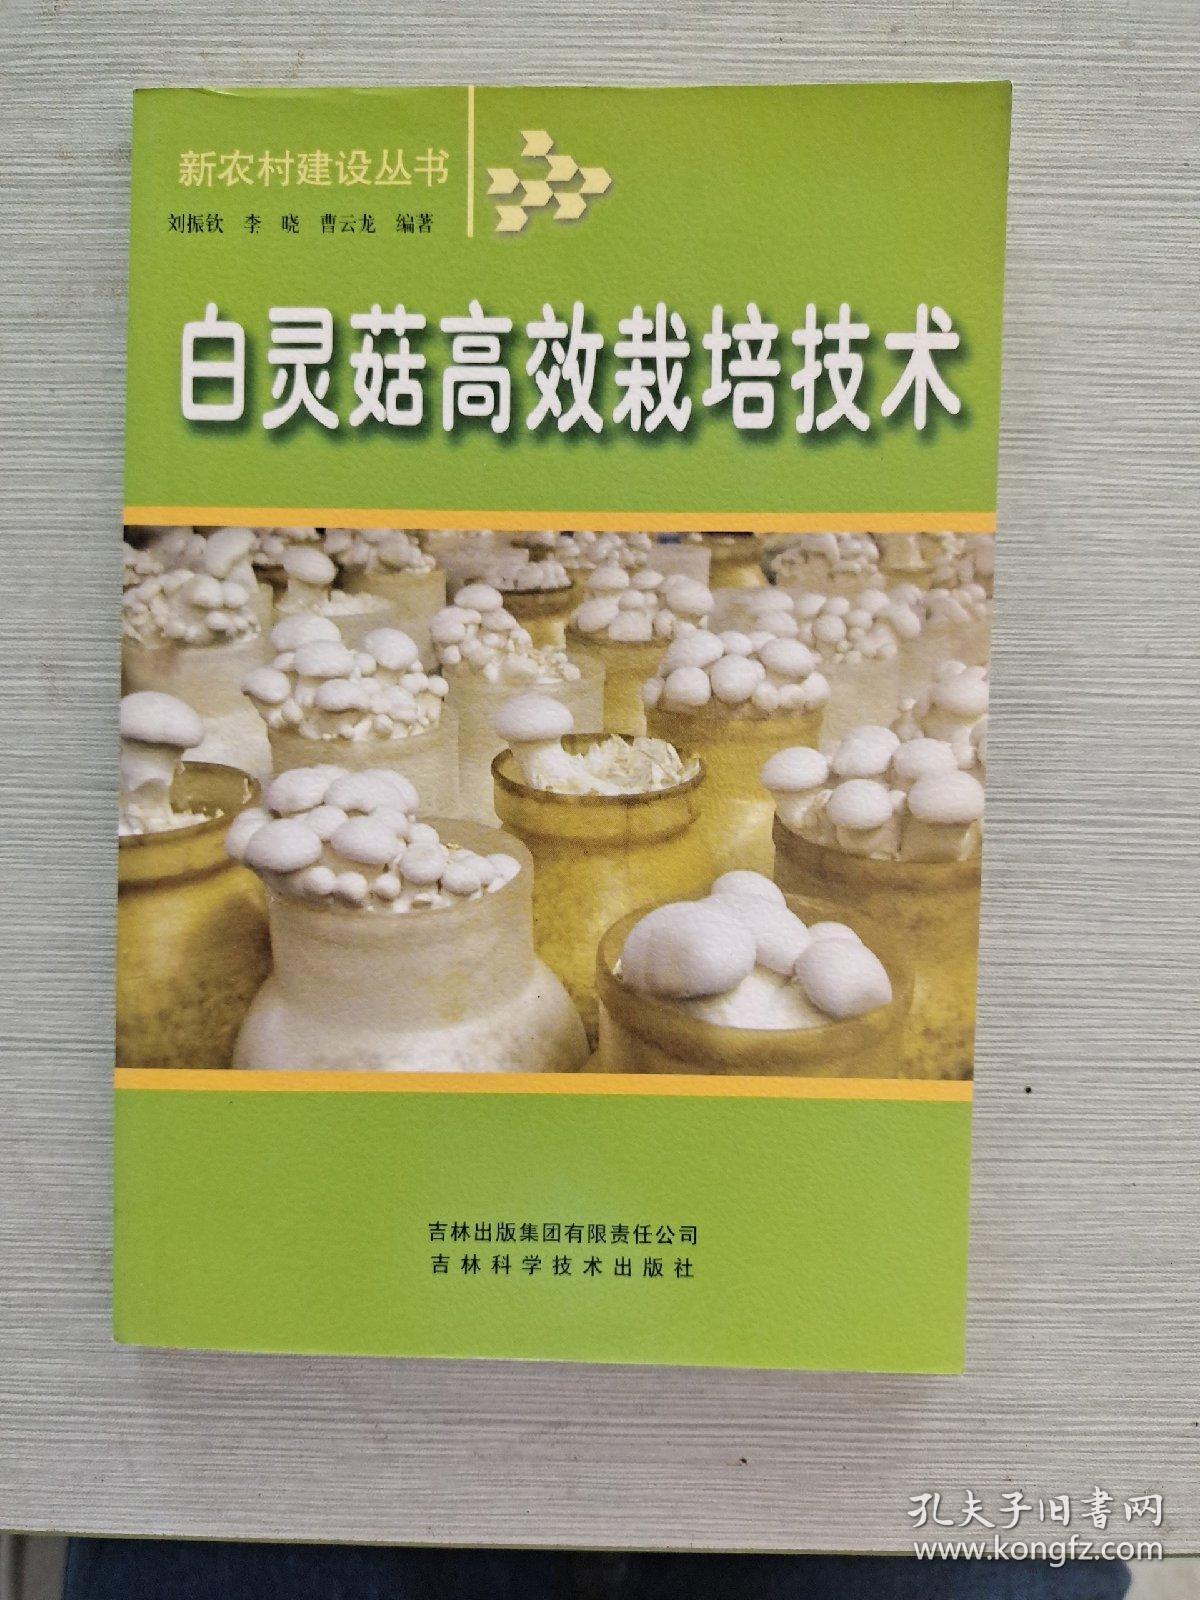 白灵菇高效栽培技术